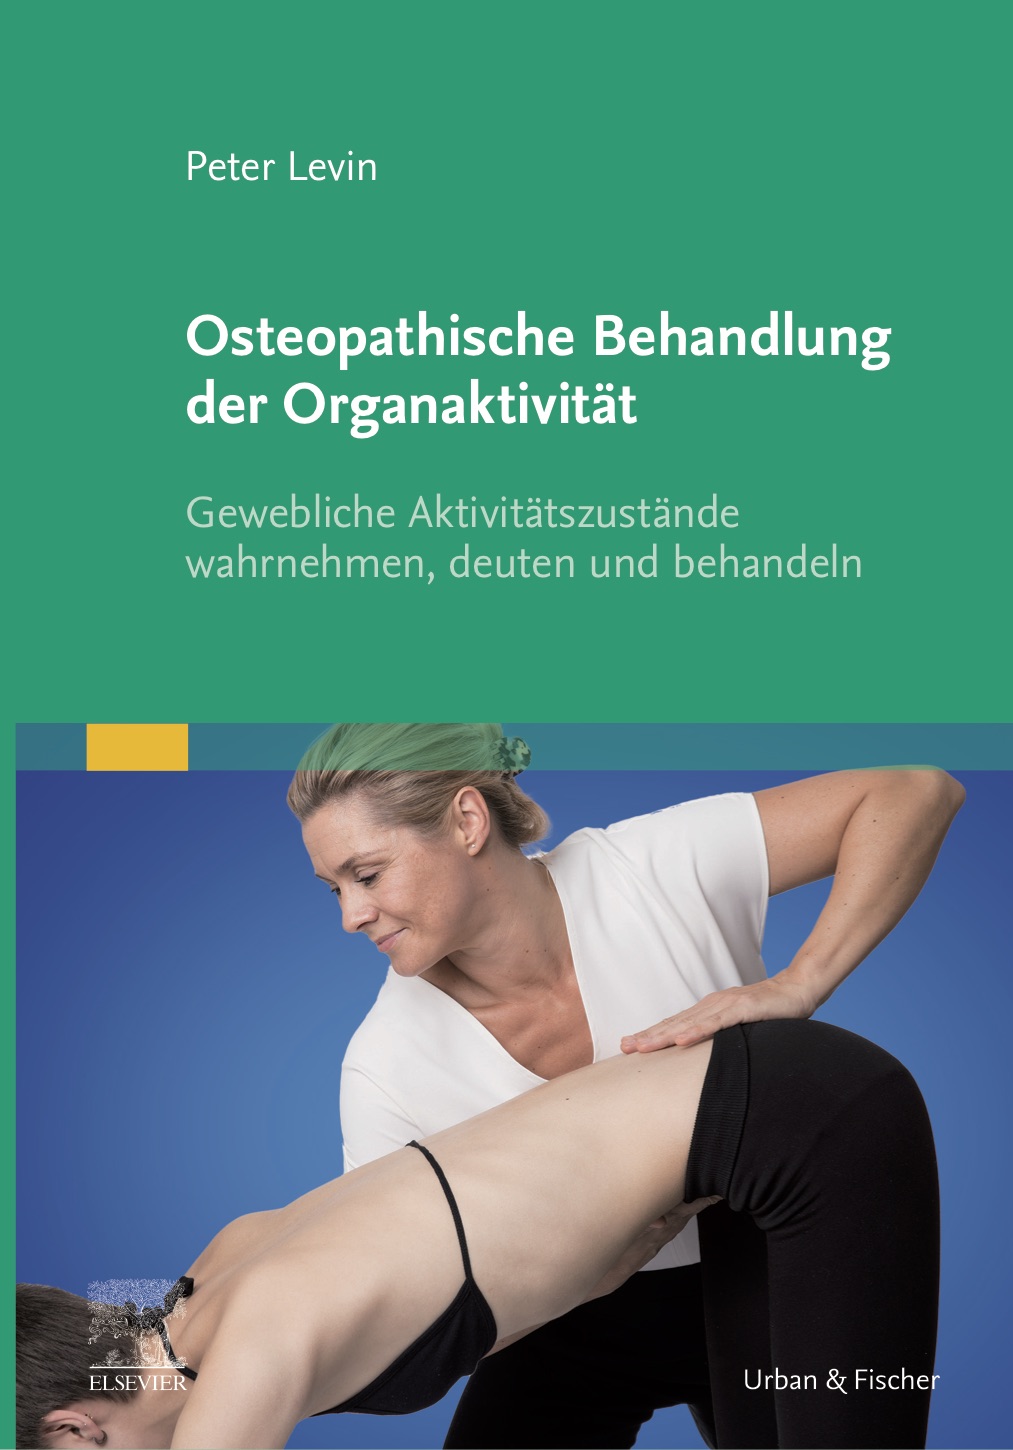 Osteopathische behandlung der Organaktivität